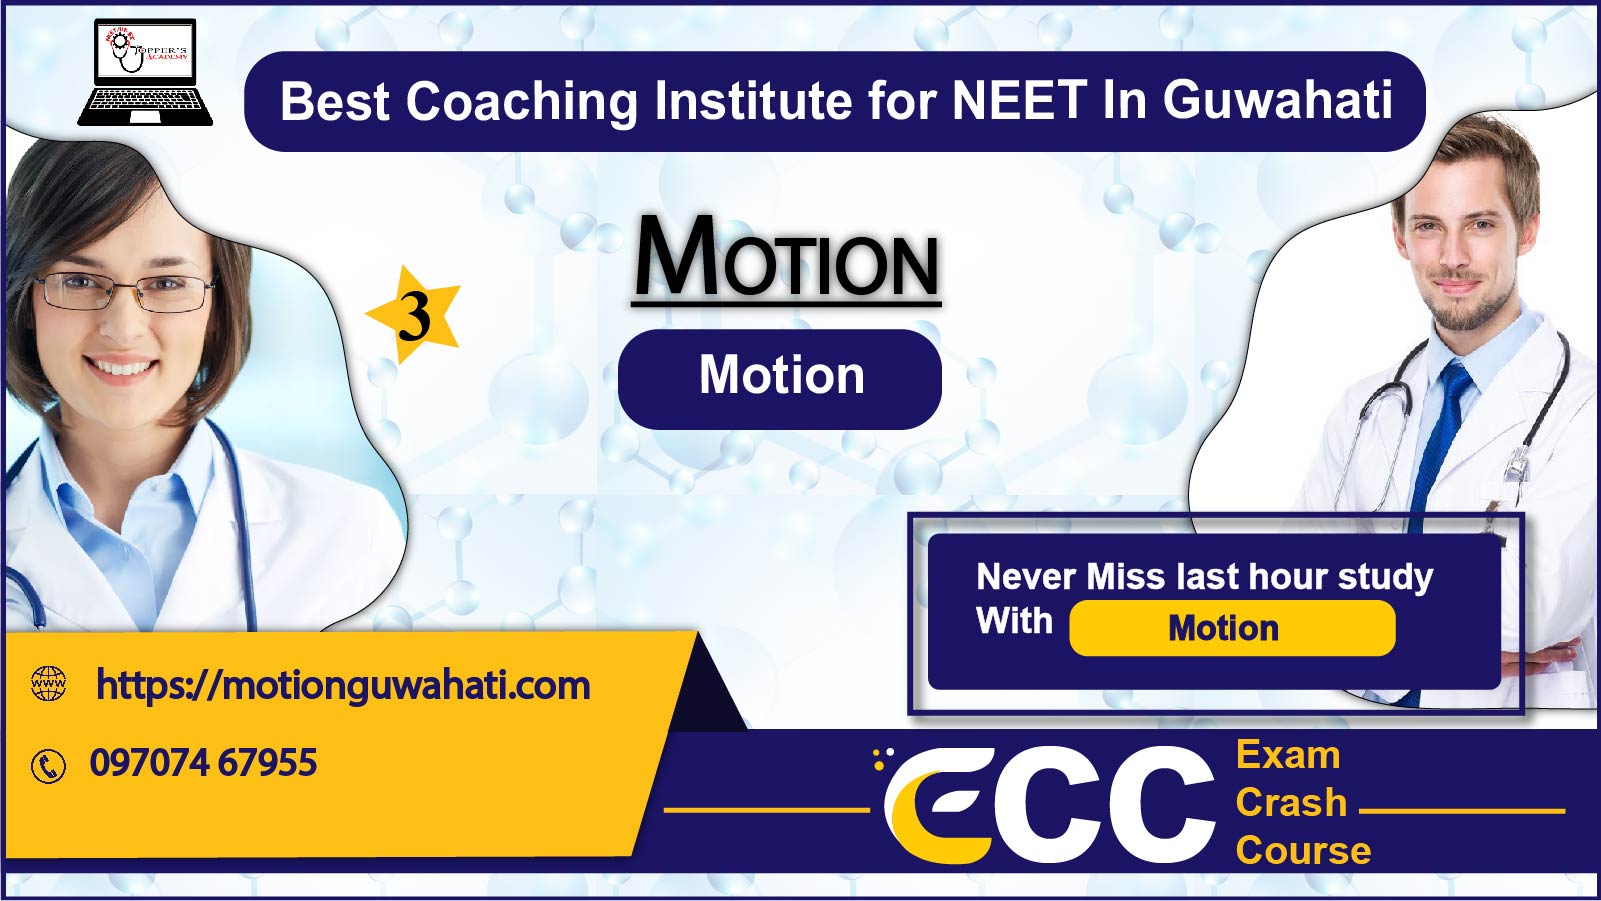 Motion NEET Coaching in Guwahati